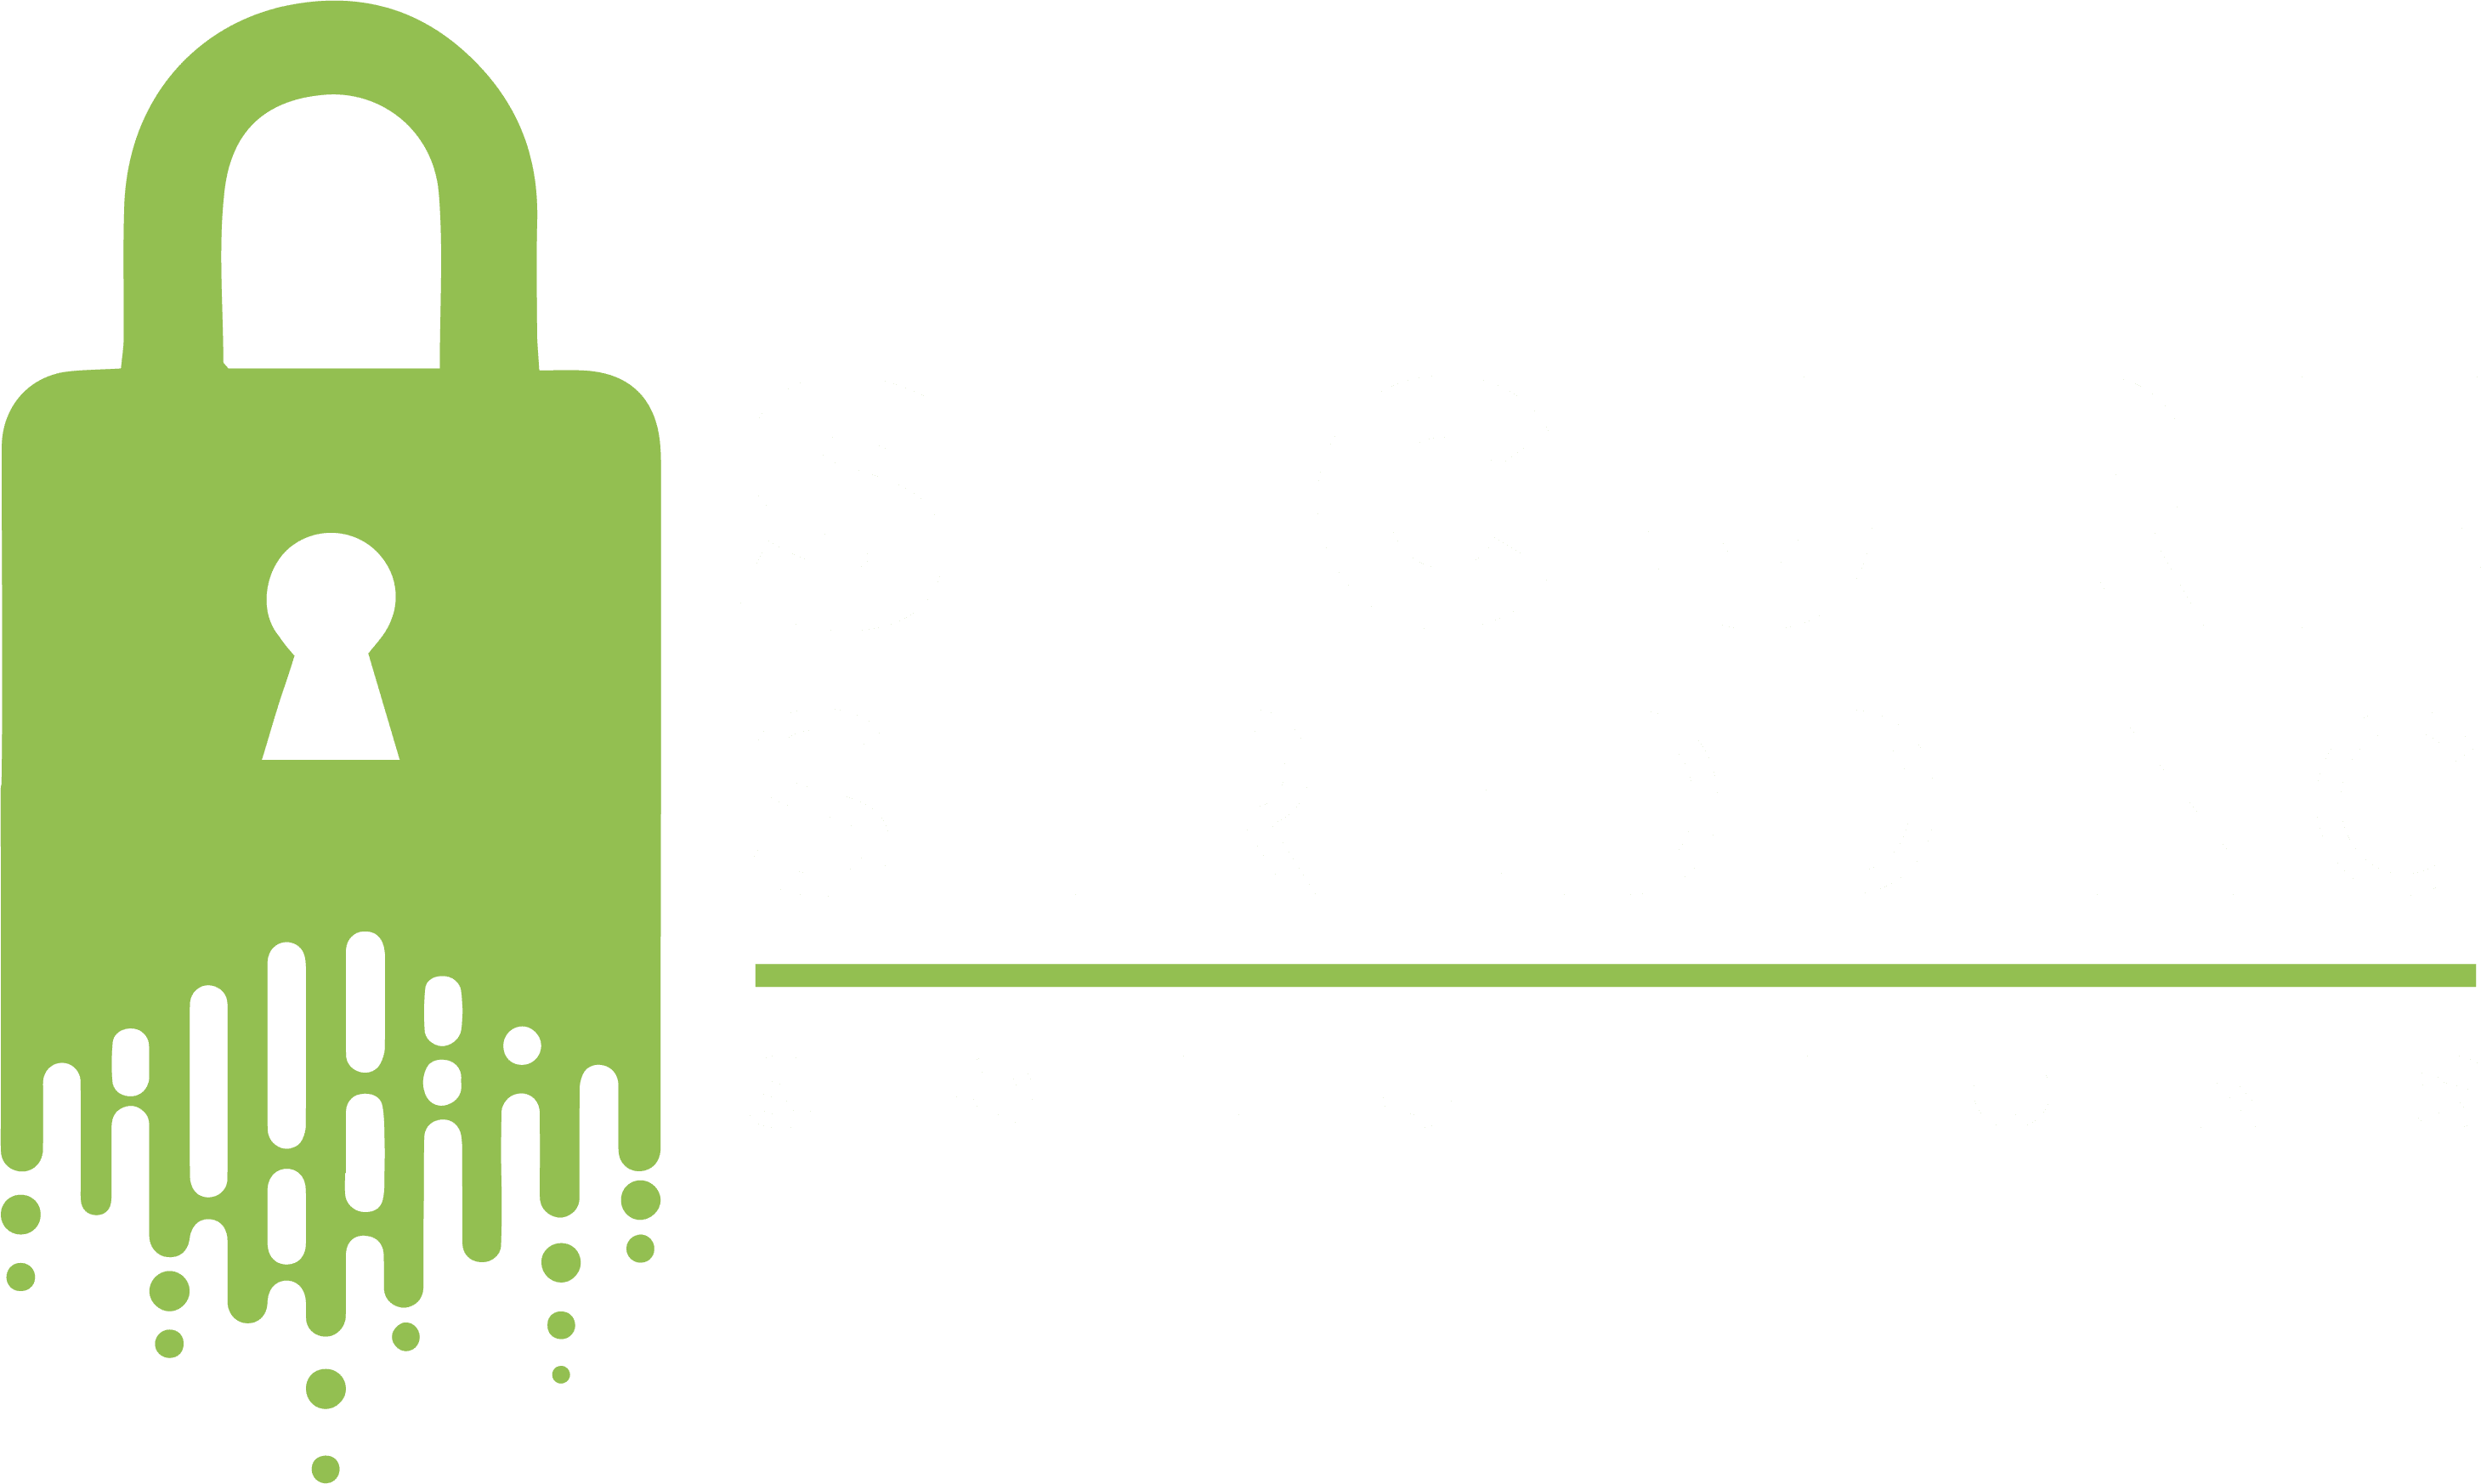 Secure Shredding Soultions